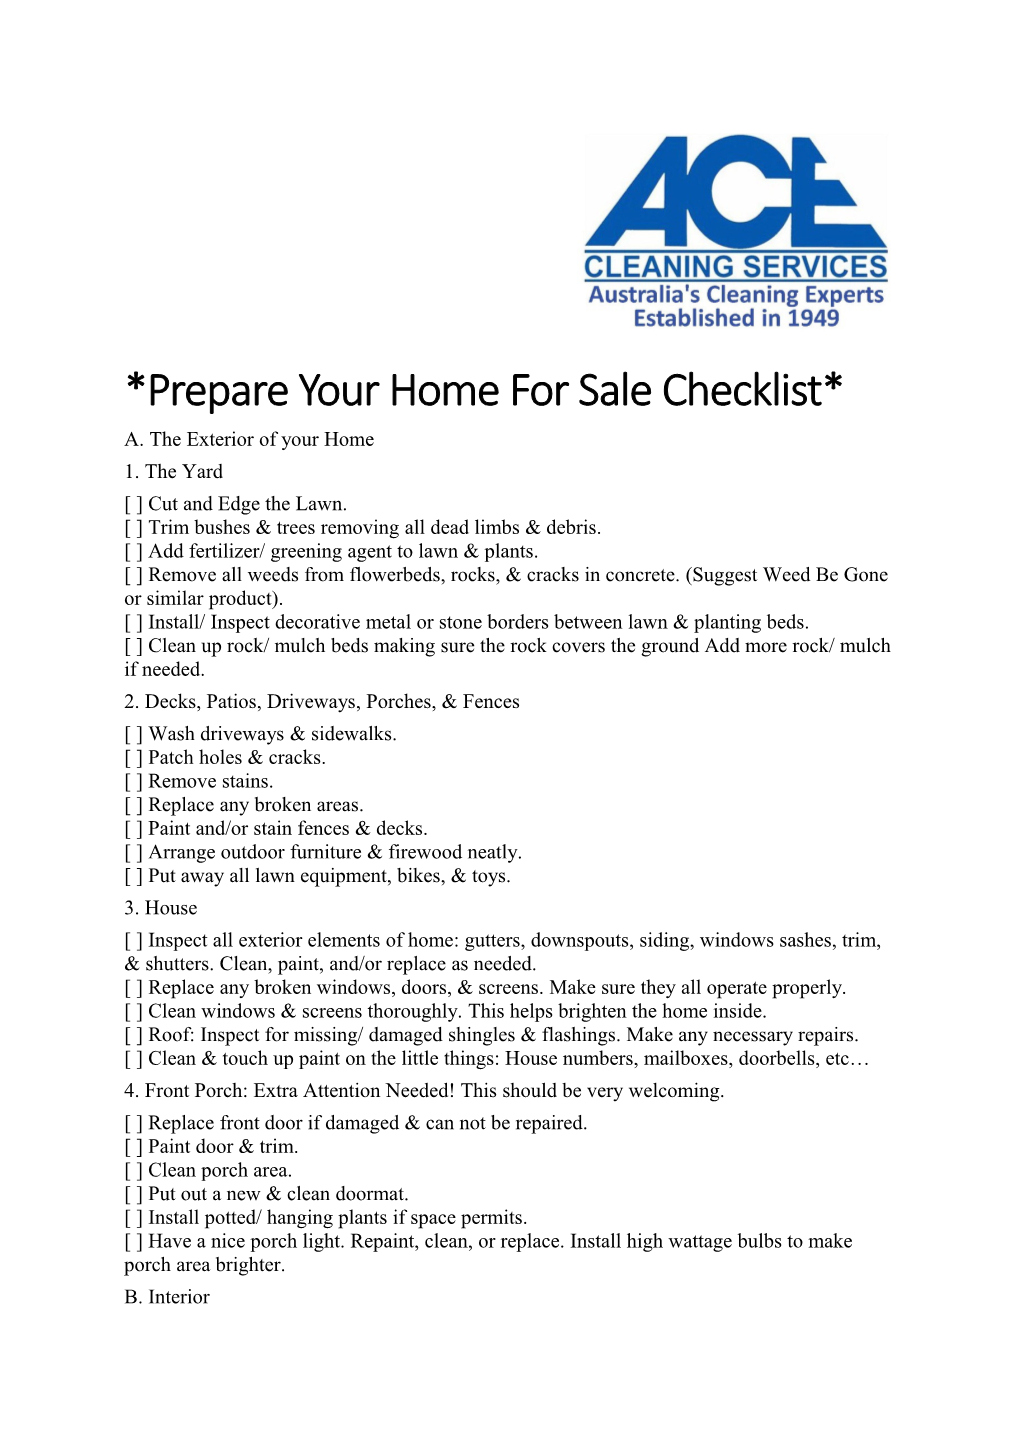 *Prepare Your Home for Sale Checklist*